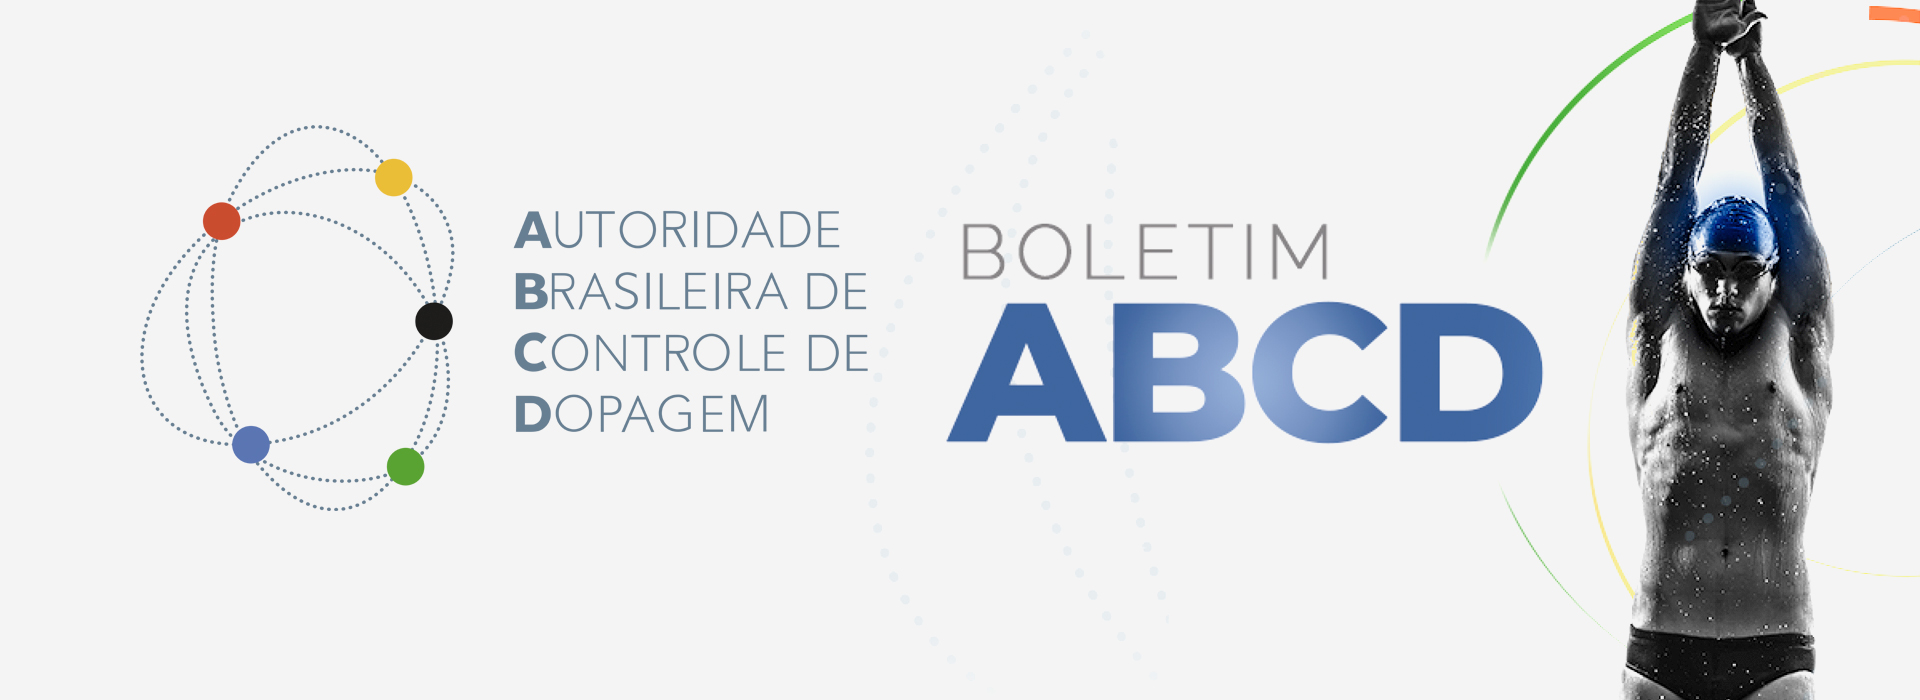 Autoridade Brasileira de Controle de Dopagem-ABCD confirma mais parcerias para a divulgação do tema